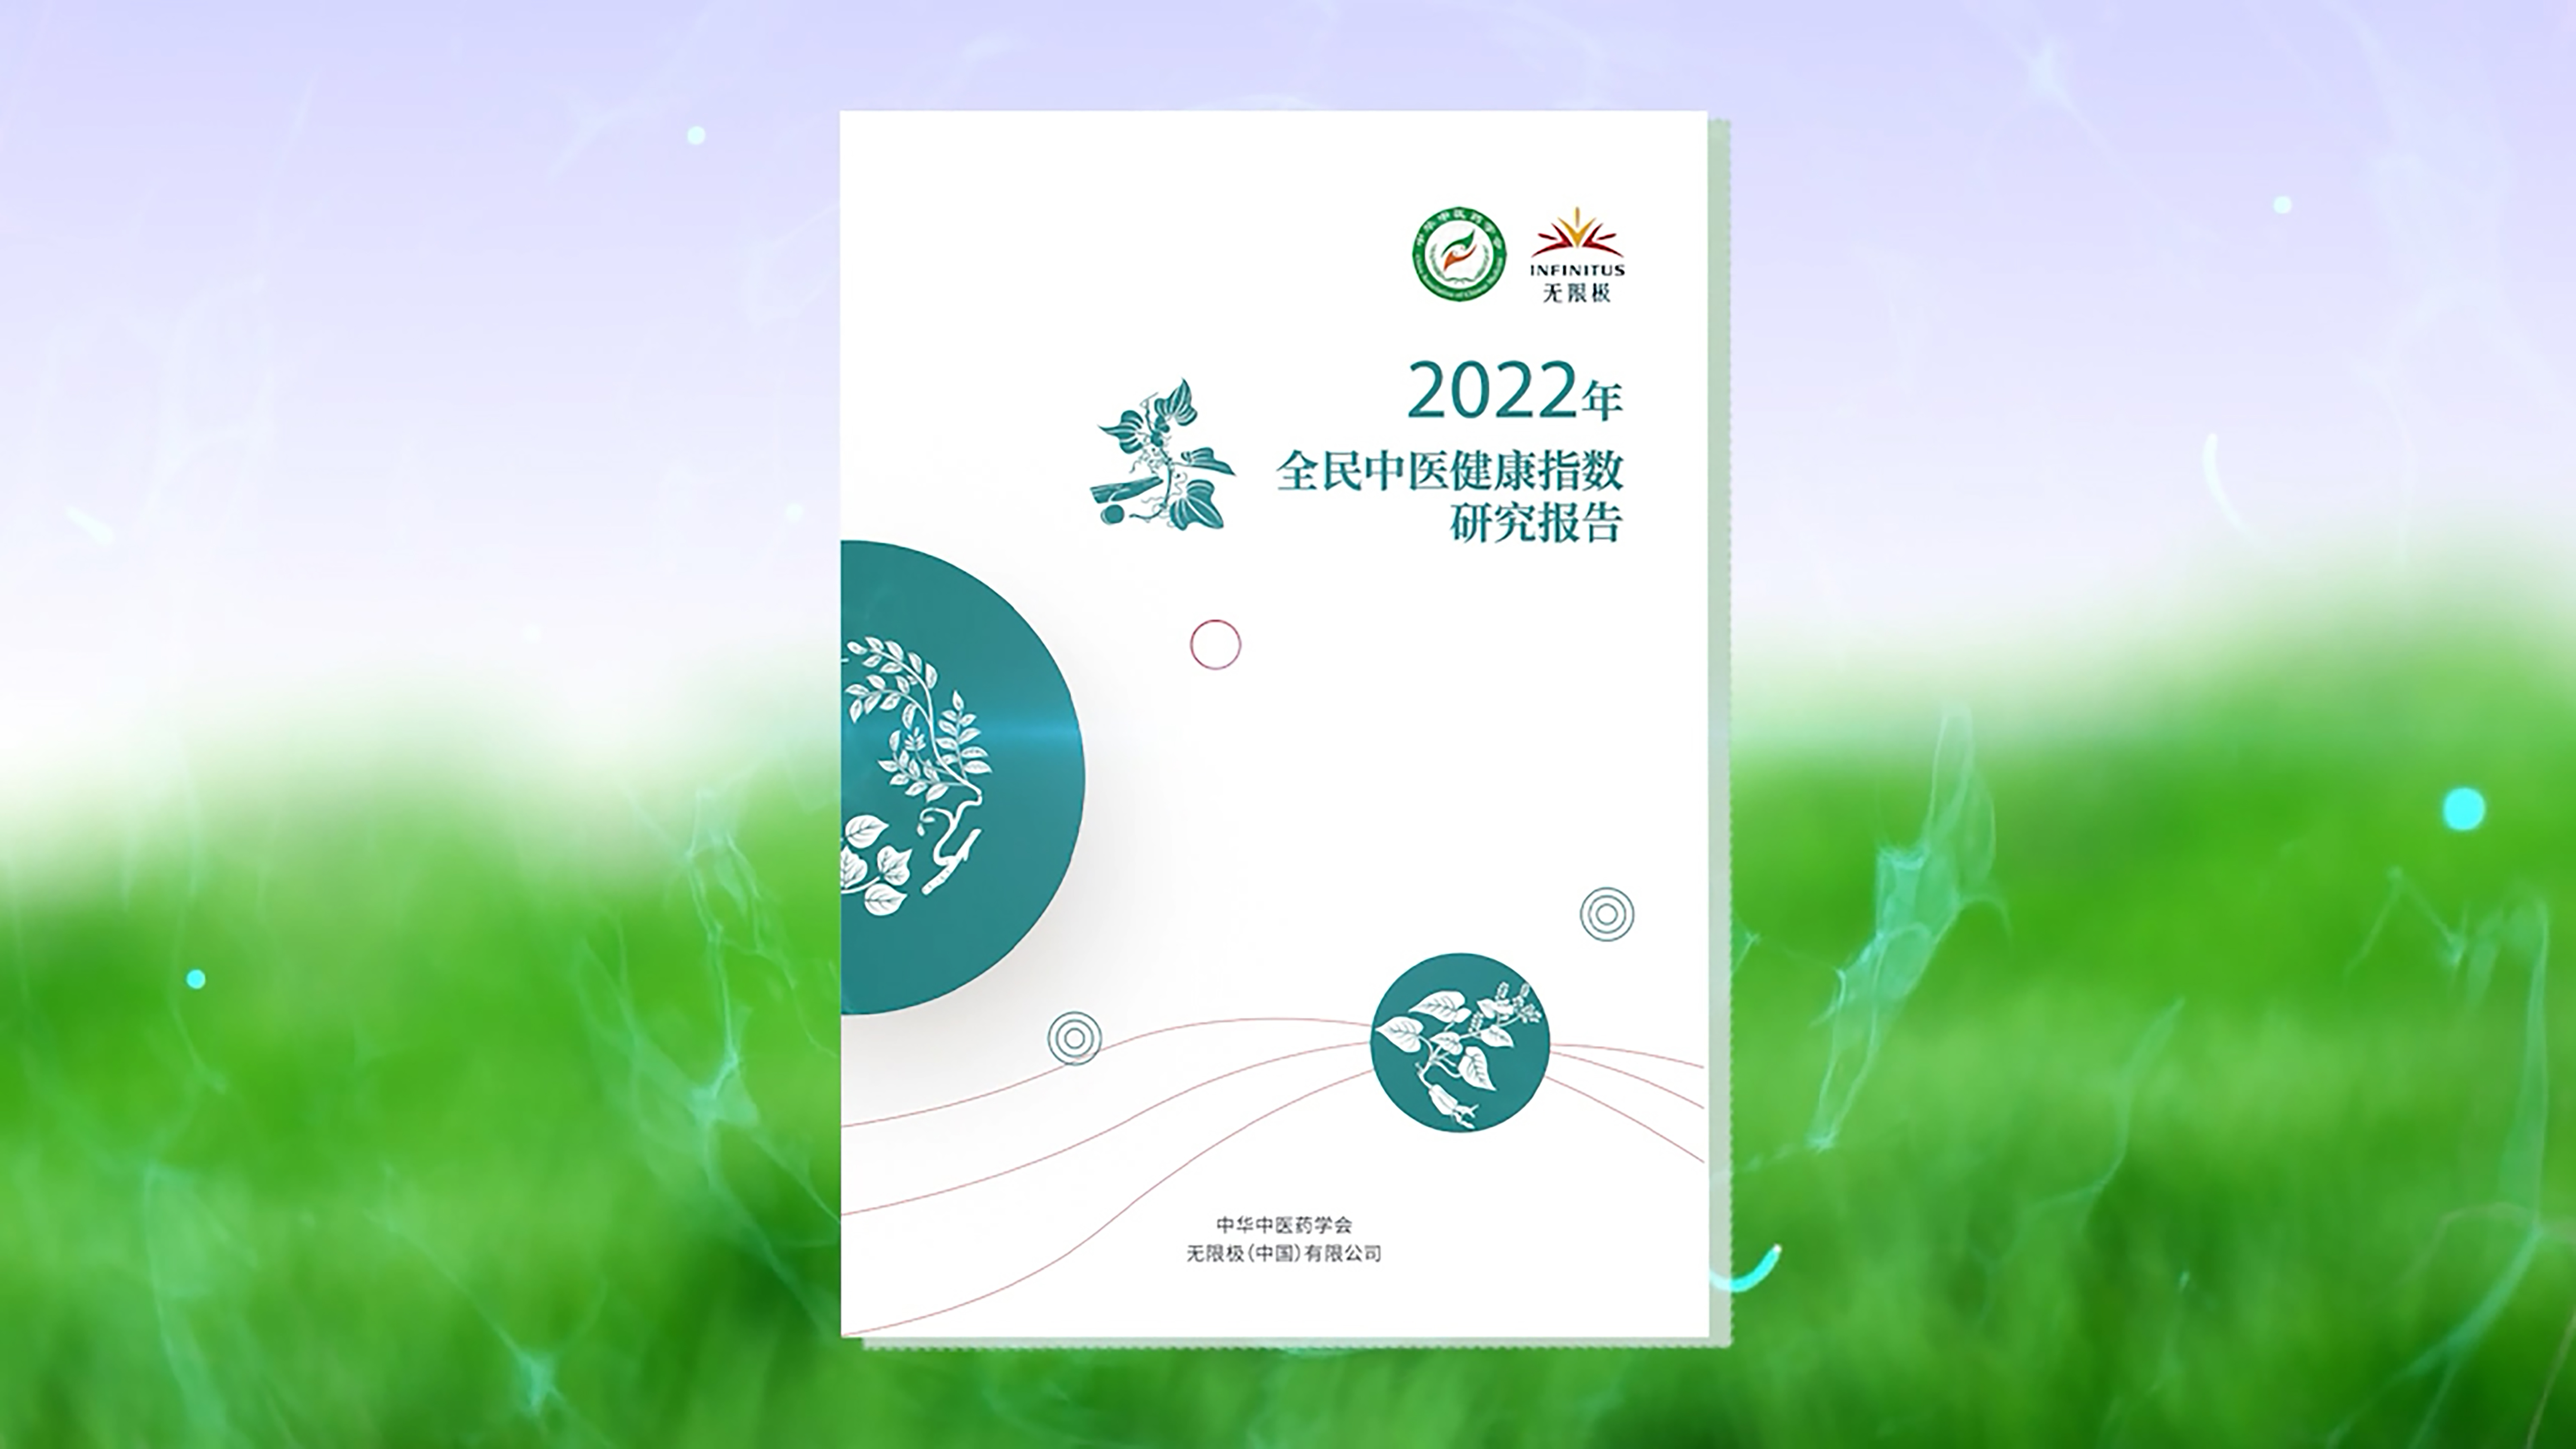 《2022年全民中醫健康指數研究報告》正式發布